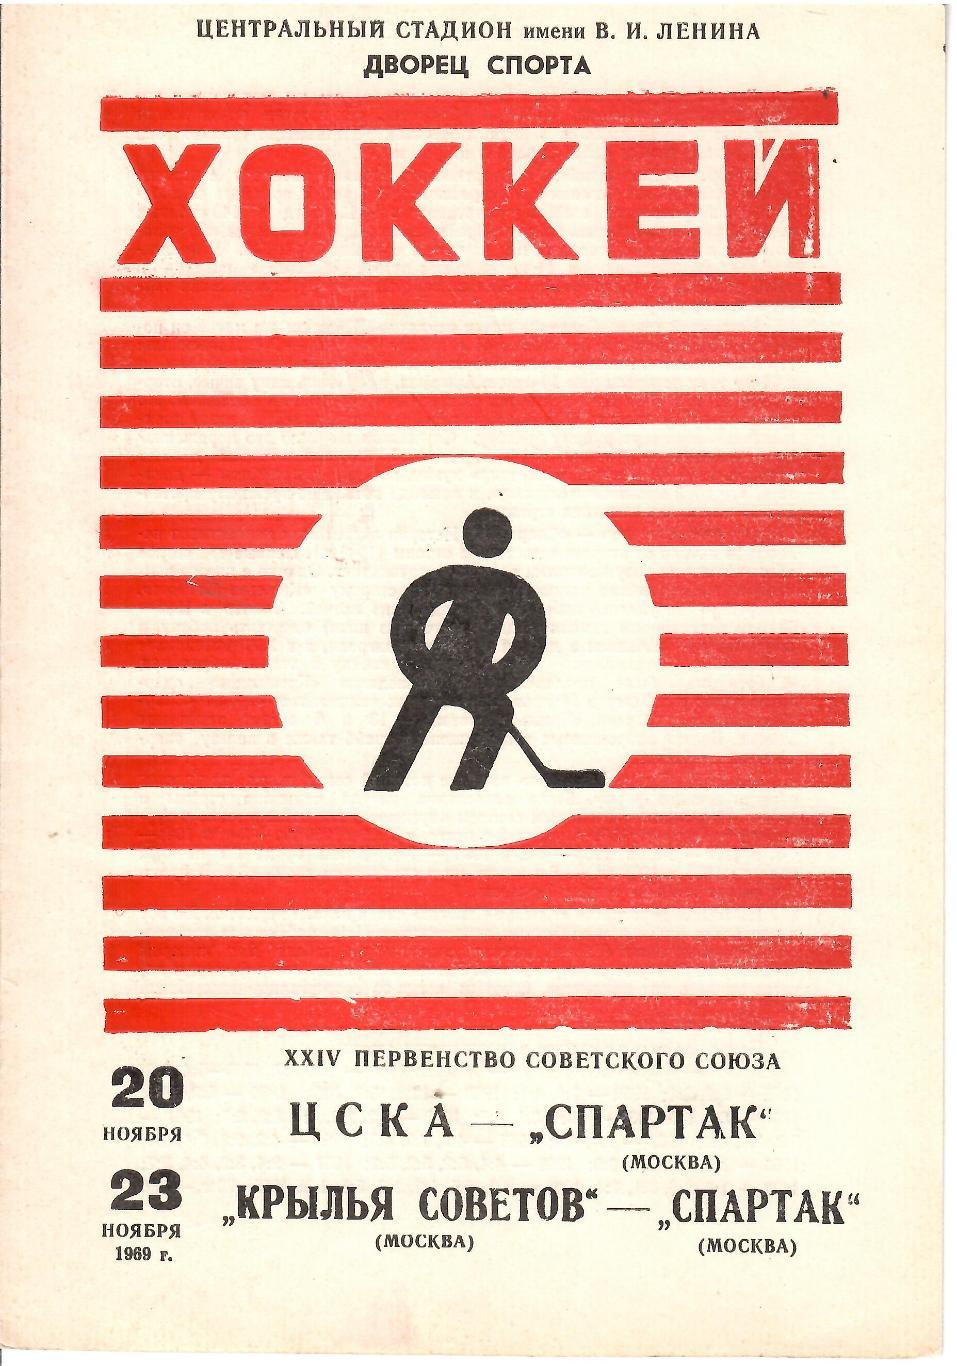 1969 Хоккей ЦСКА - Спартак Москва - Крылья Советов